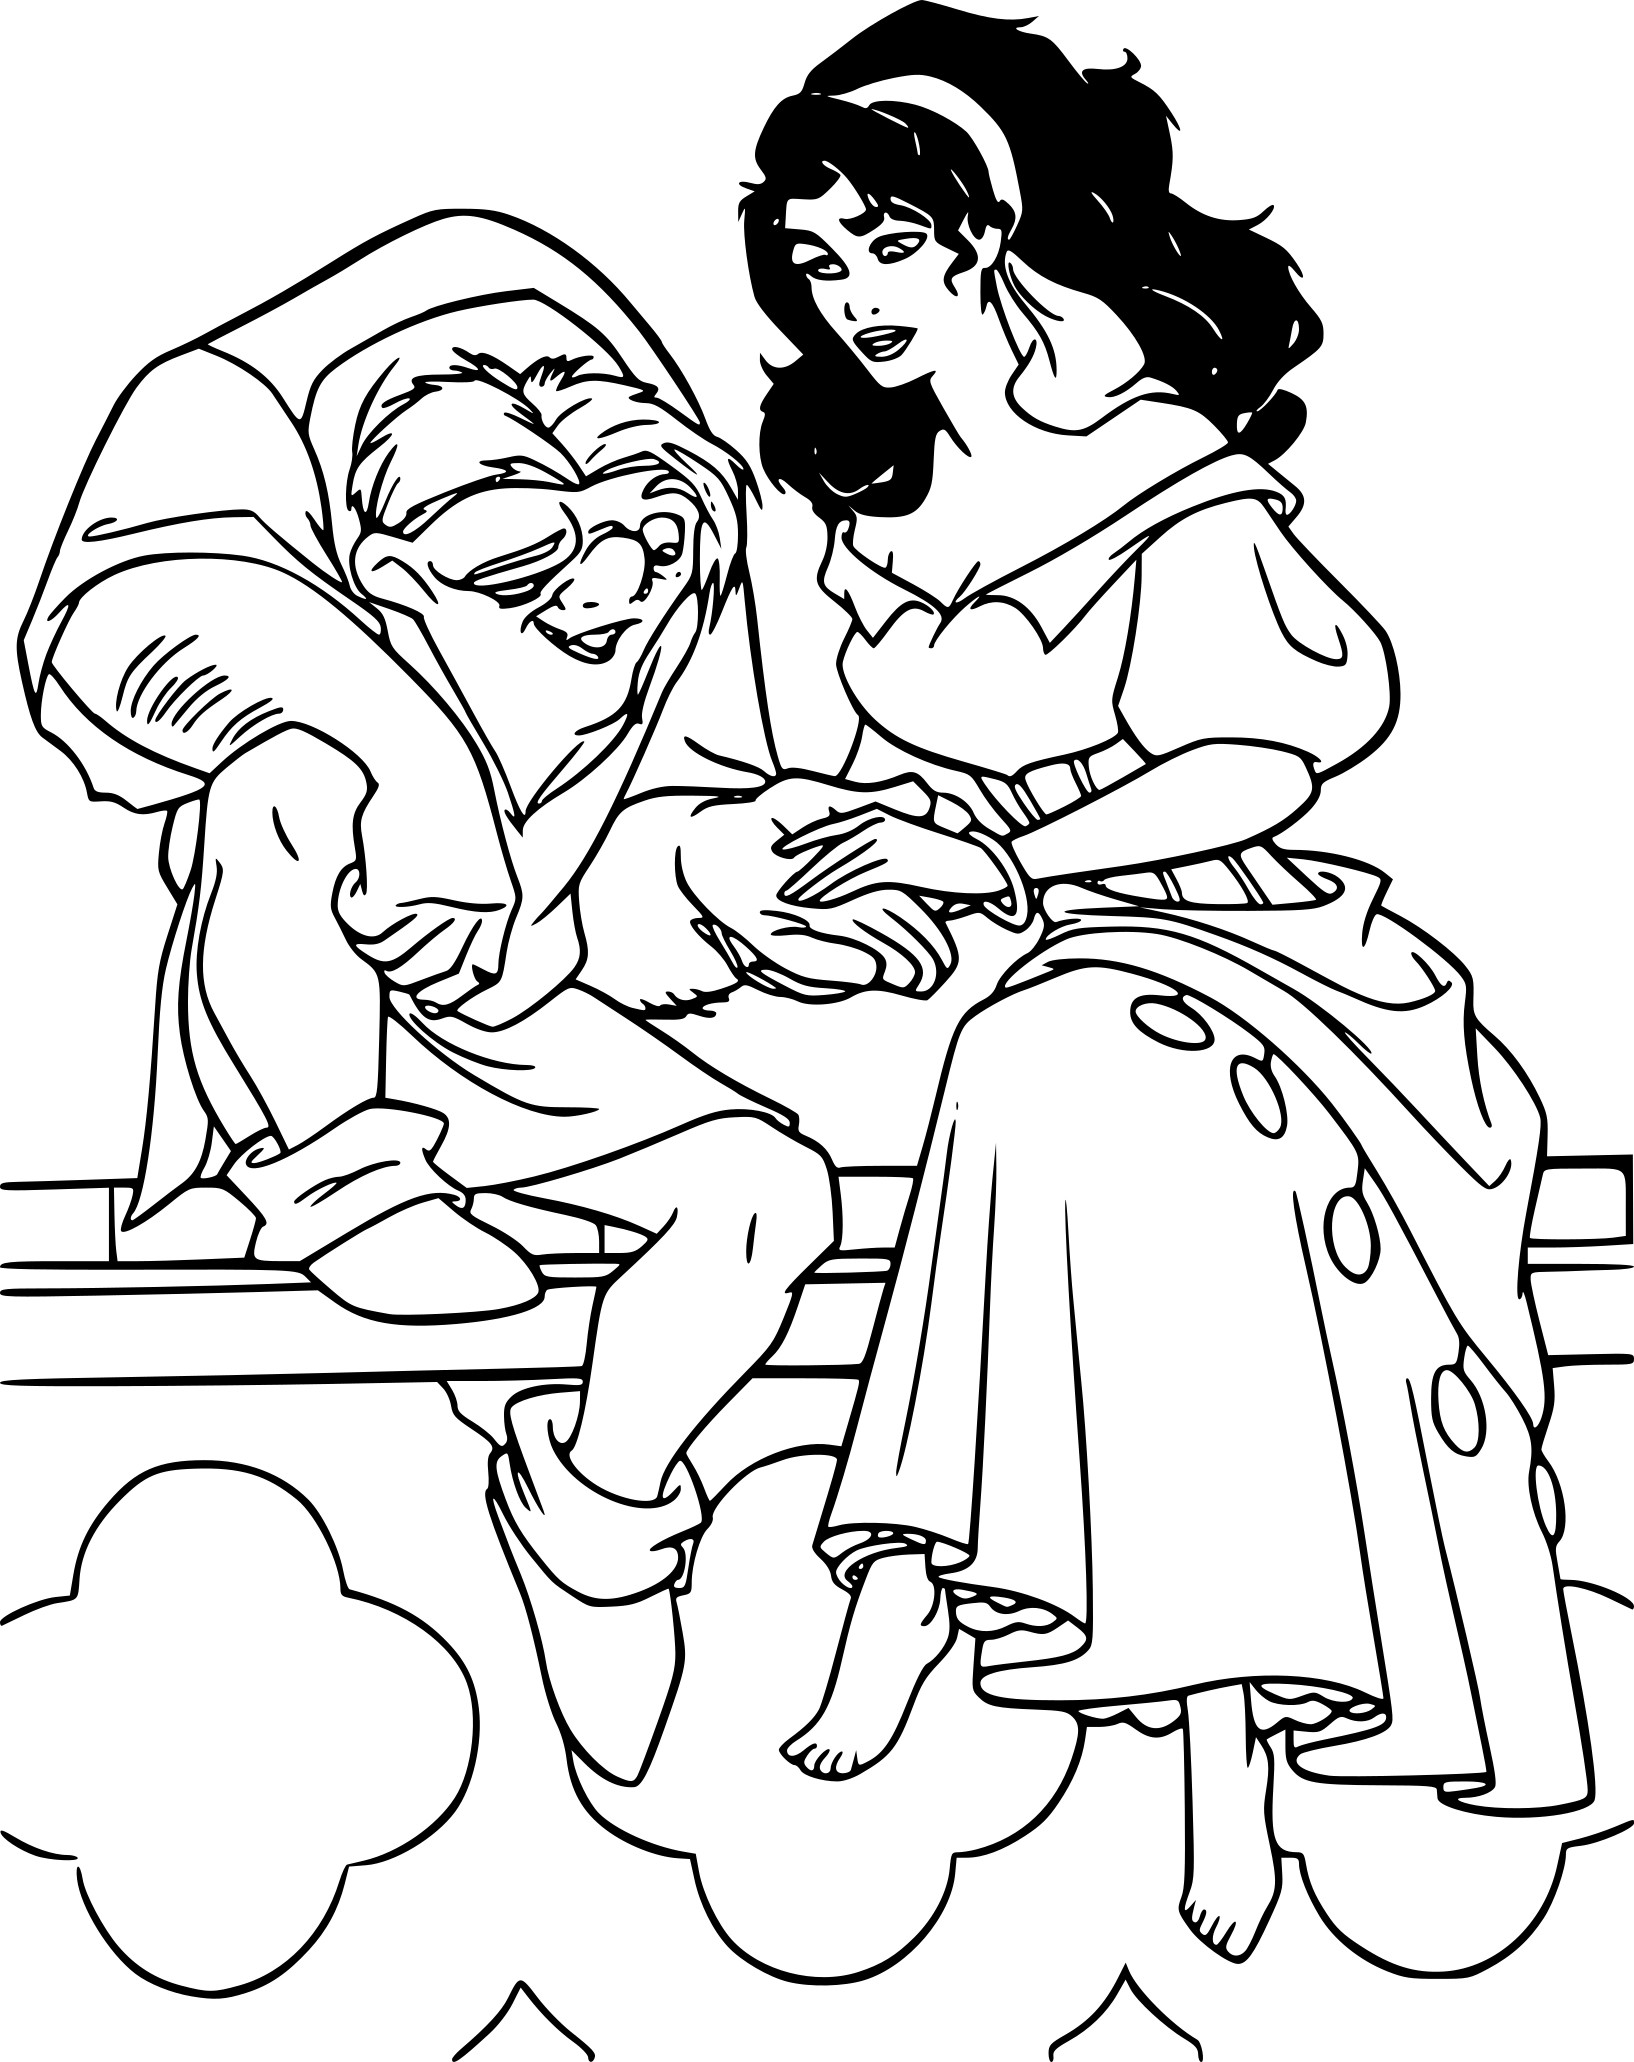 Disegno di Quasimodo ed Esmeralda da colorare